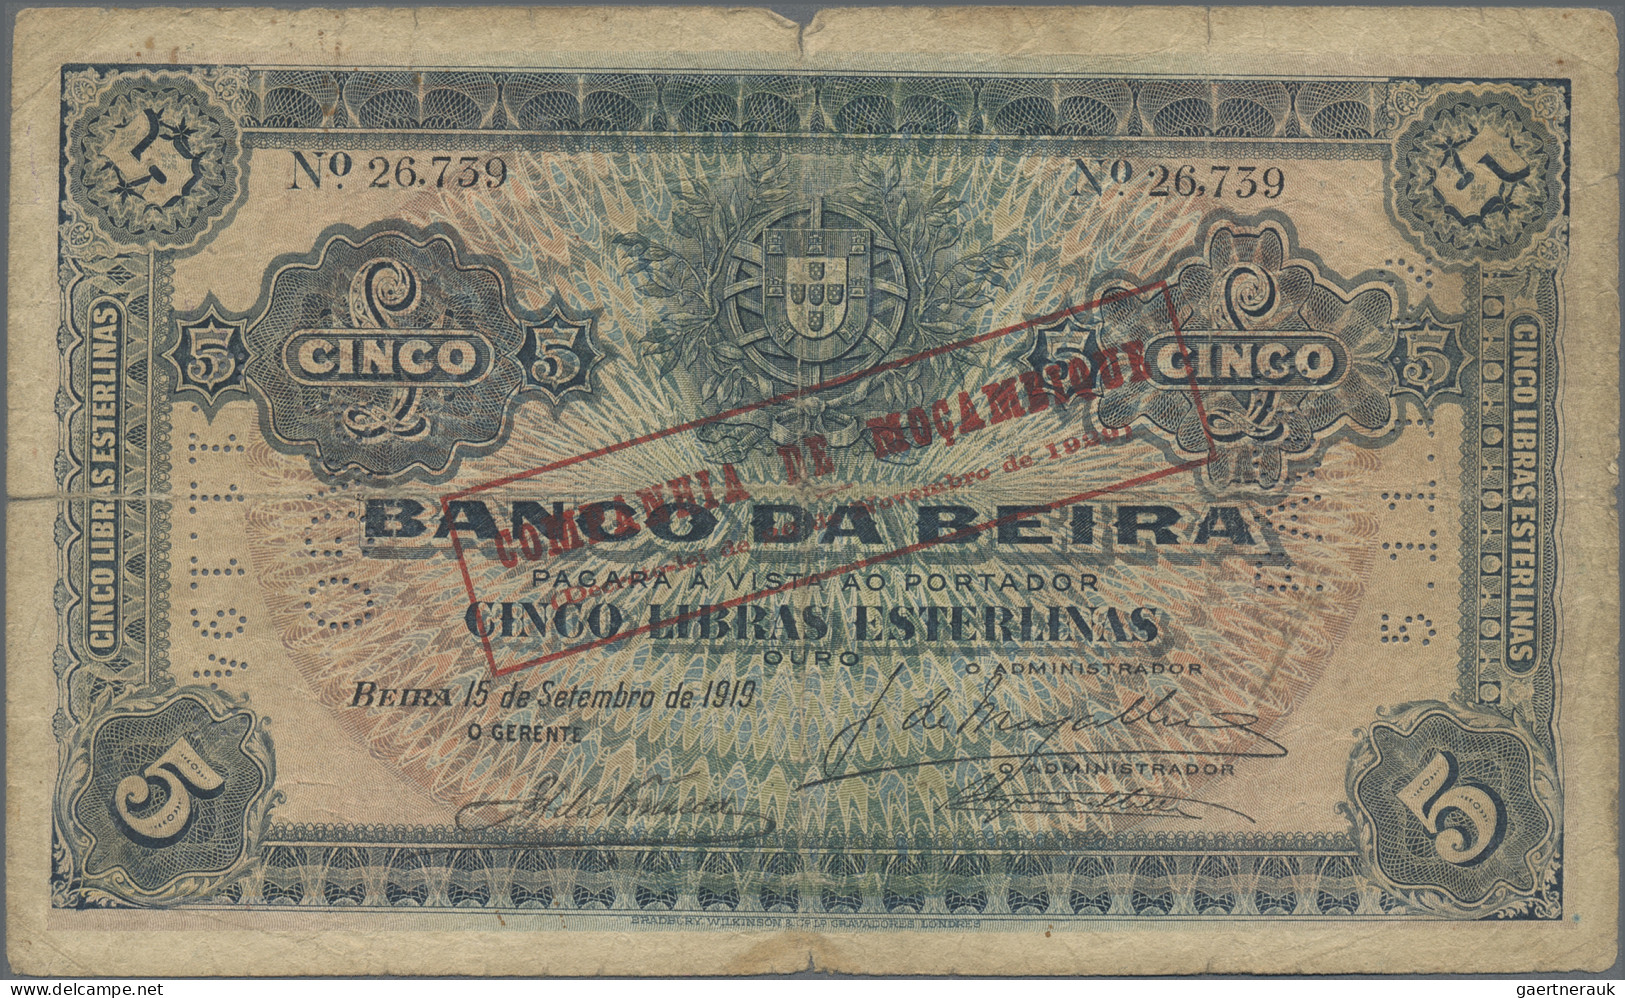 Mozambique: Companhía de Moçambique, lot with 4 banknotes, 1919-1933 series, wit